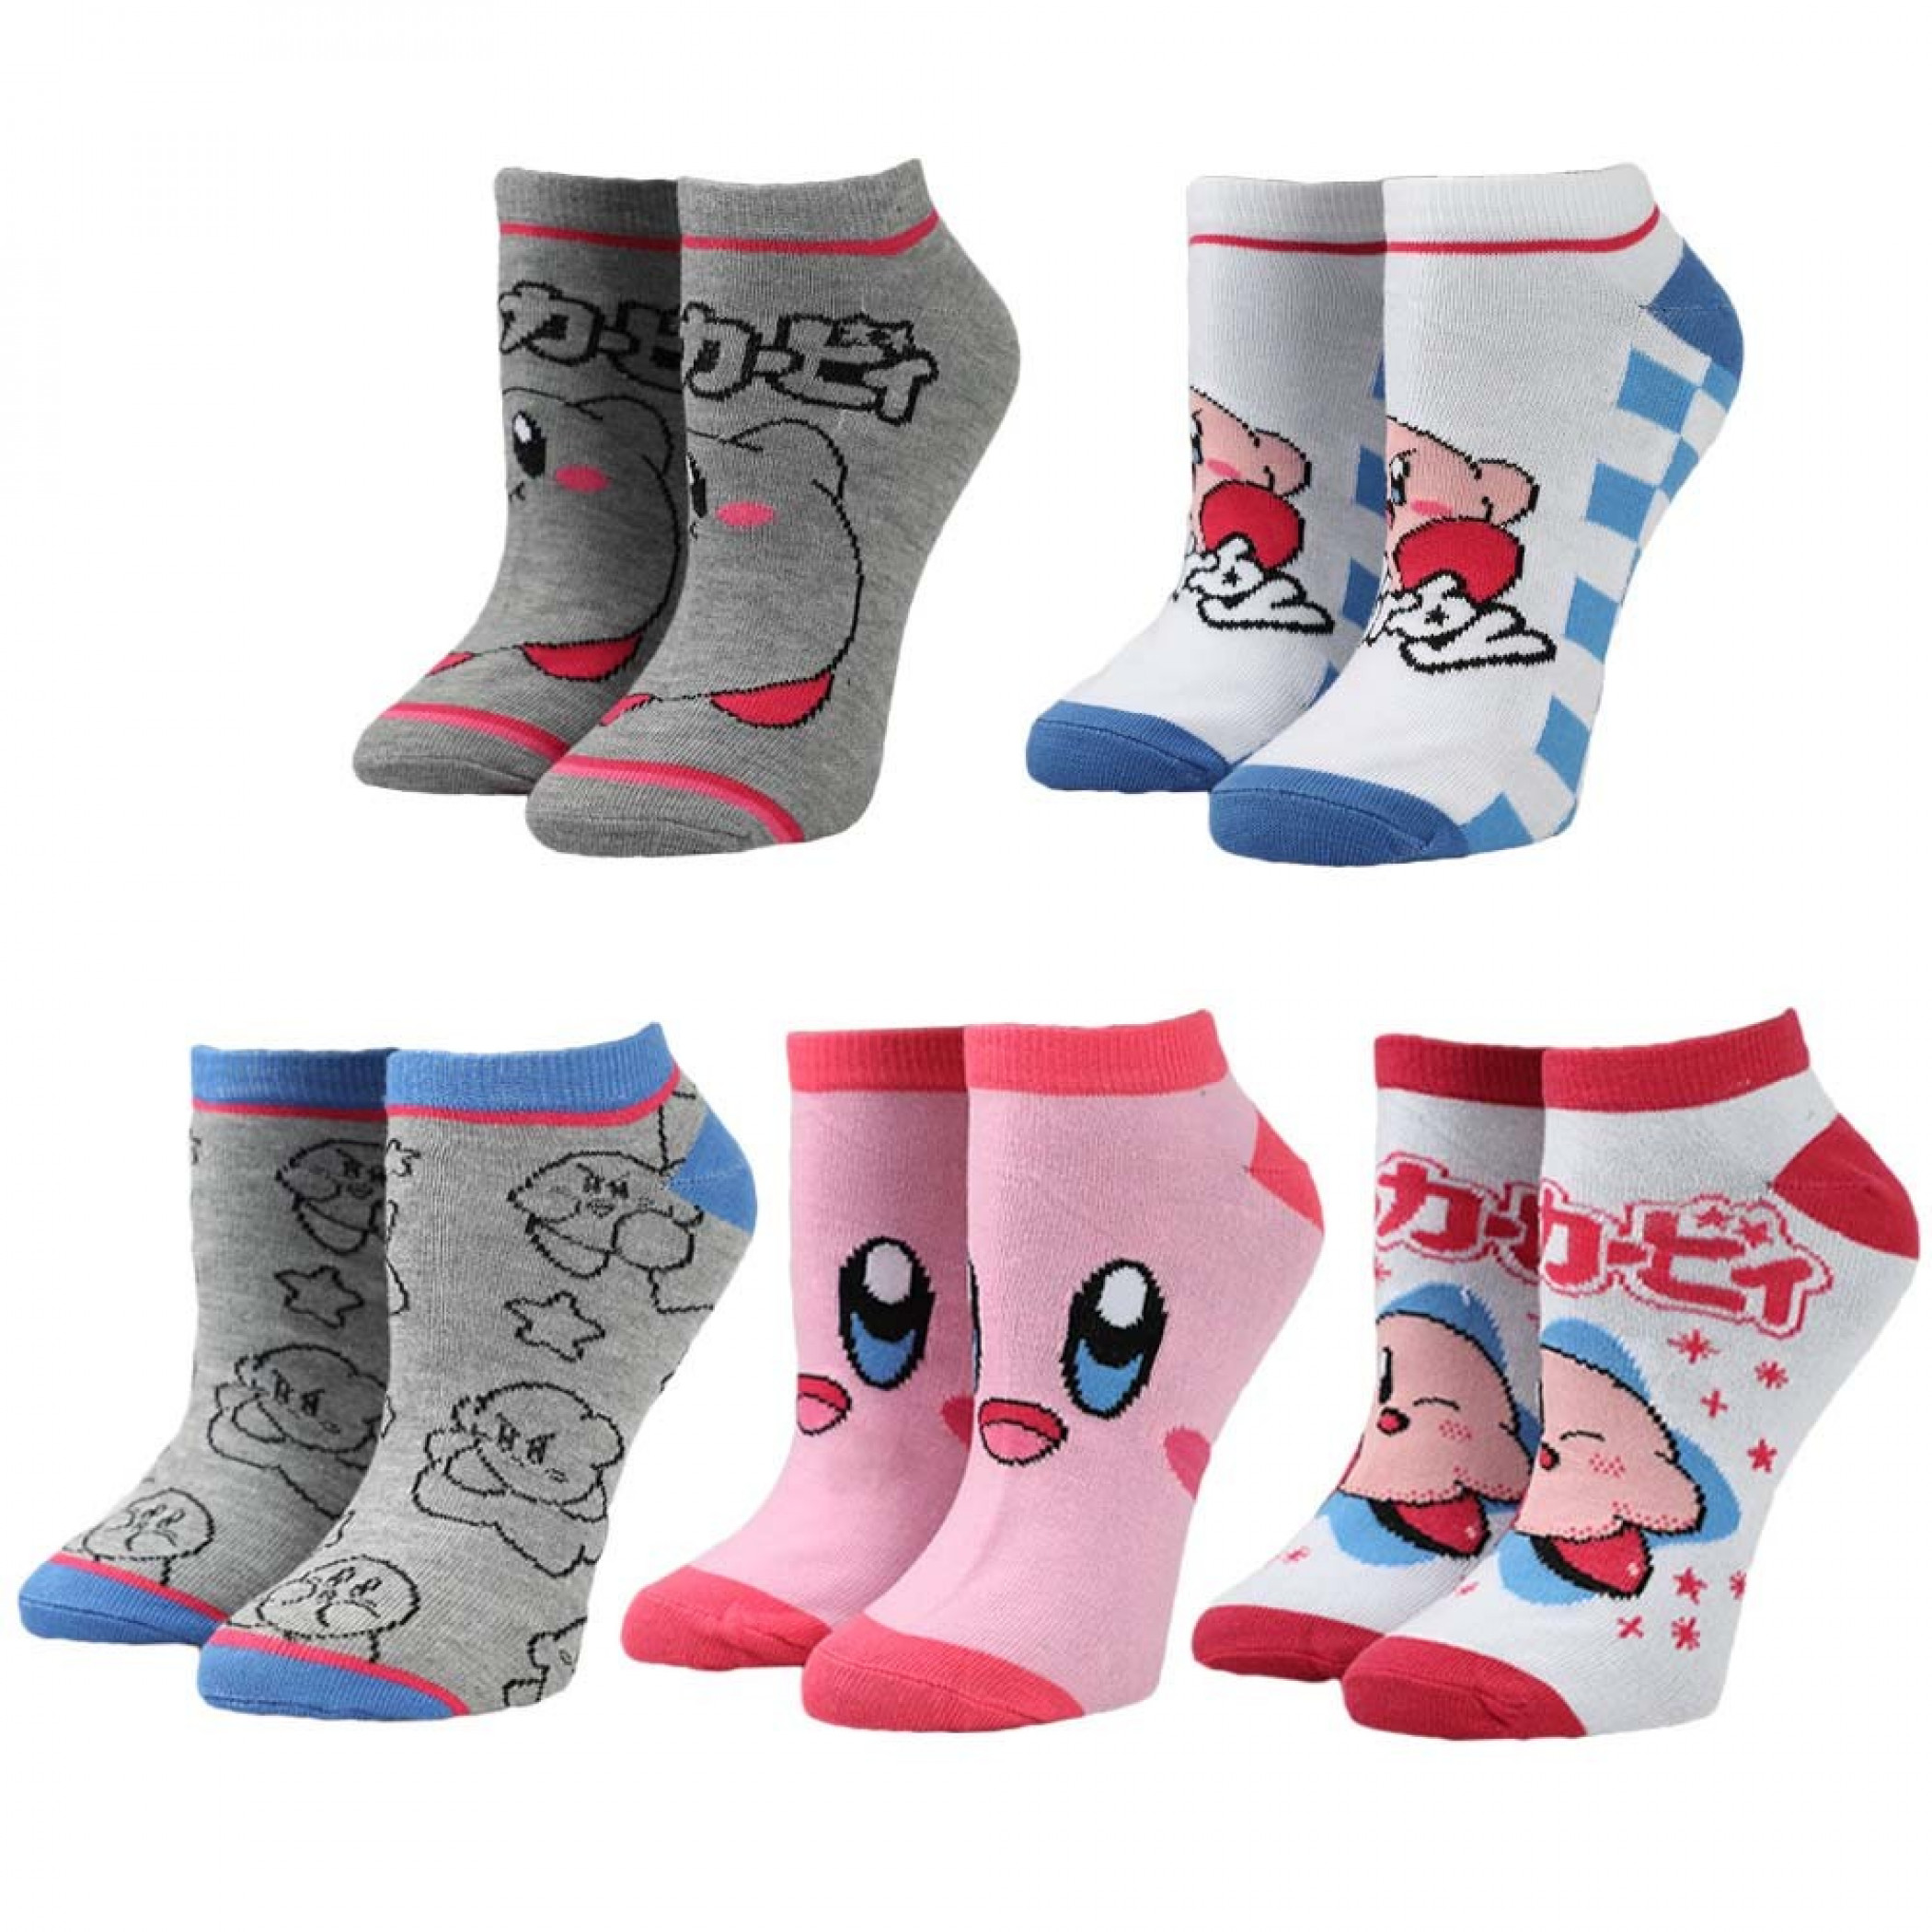 Kirby 5-Pair Pack of Ankle Socks